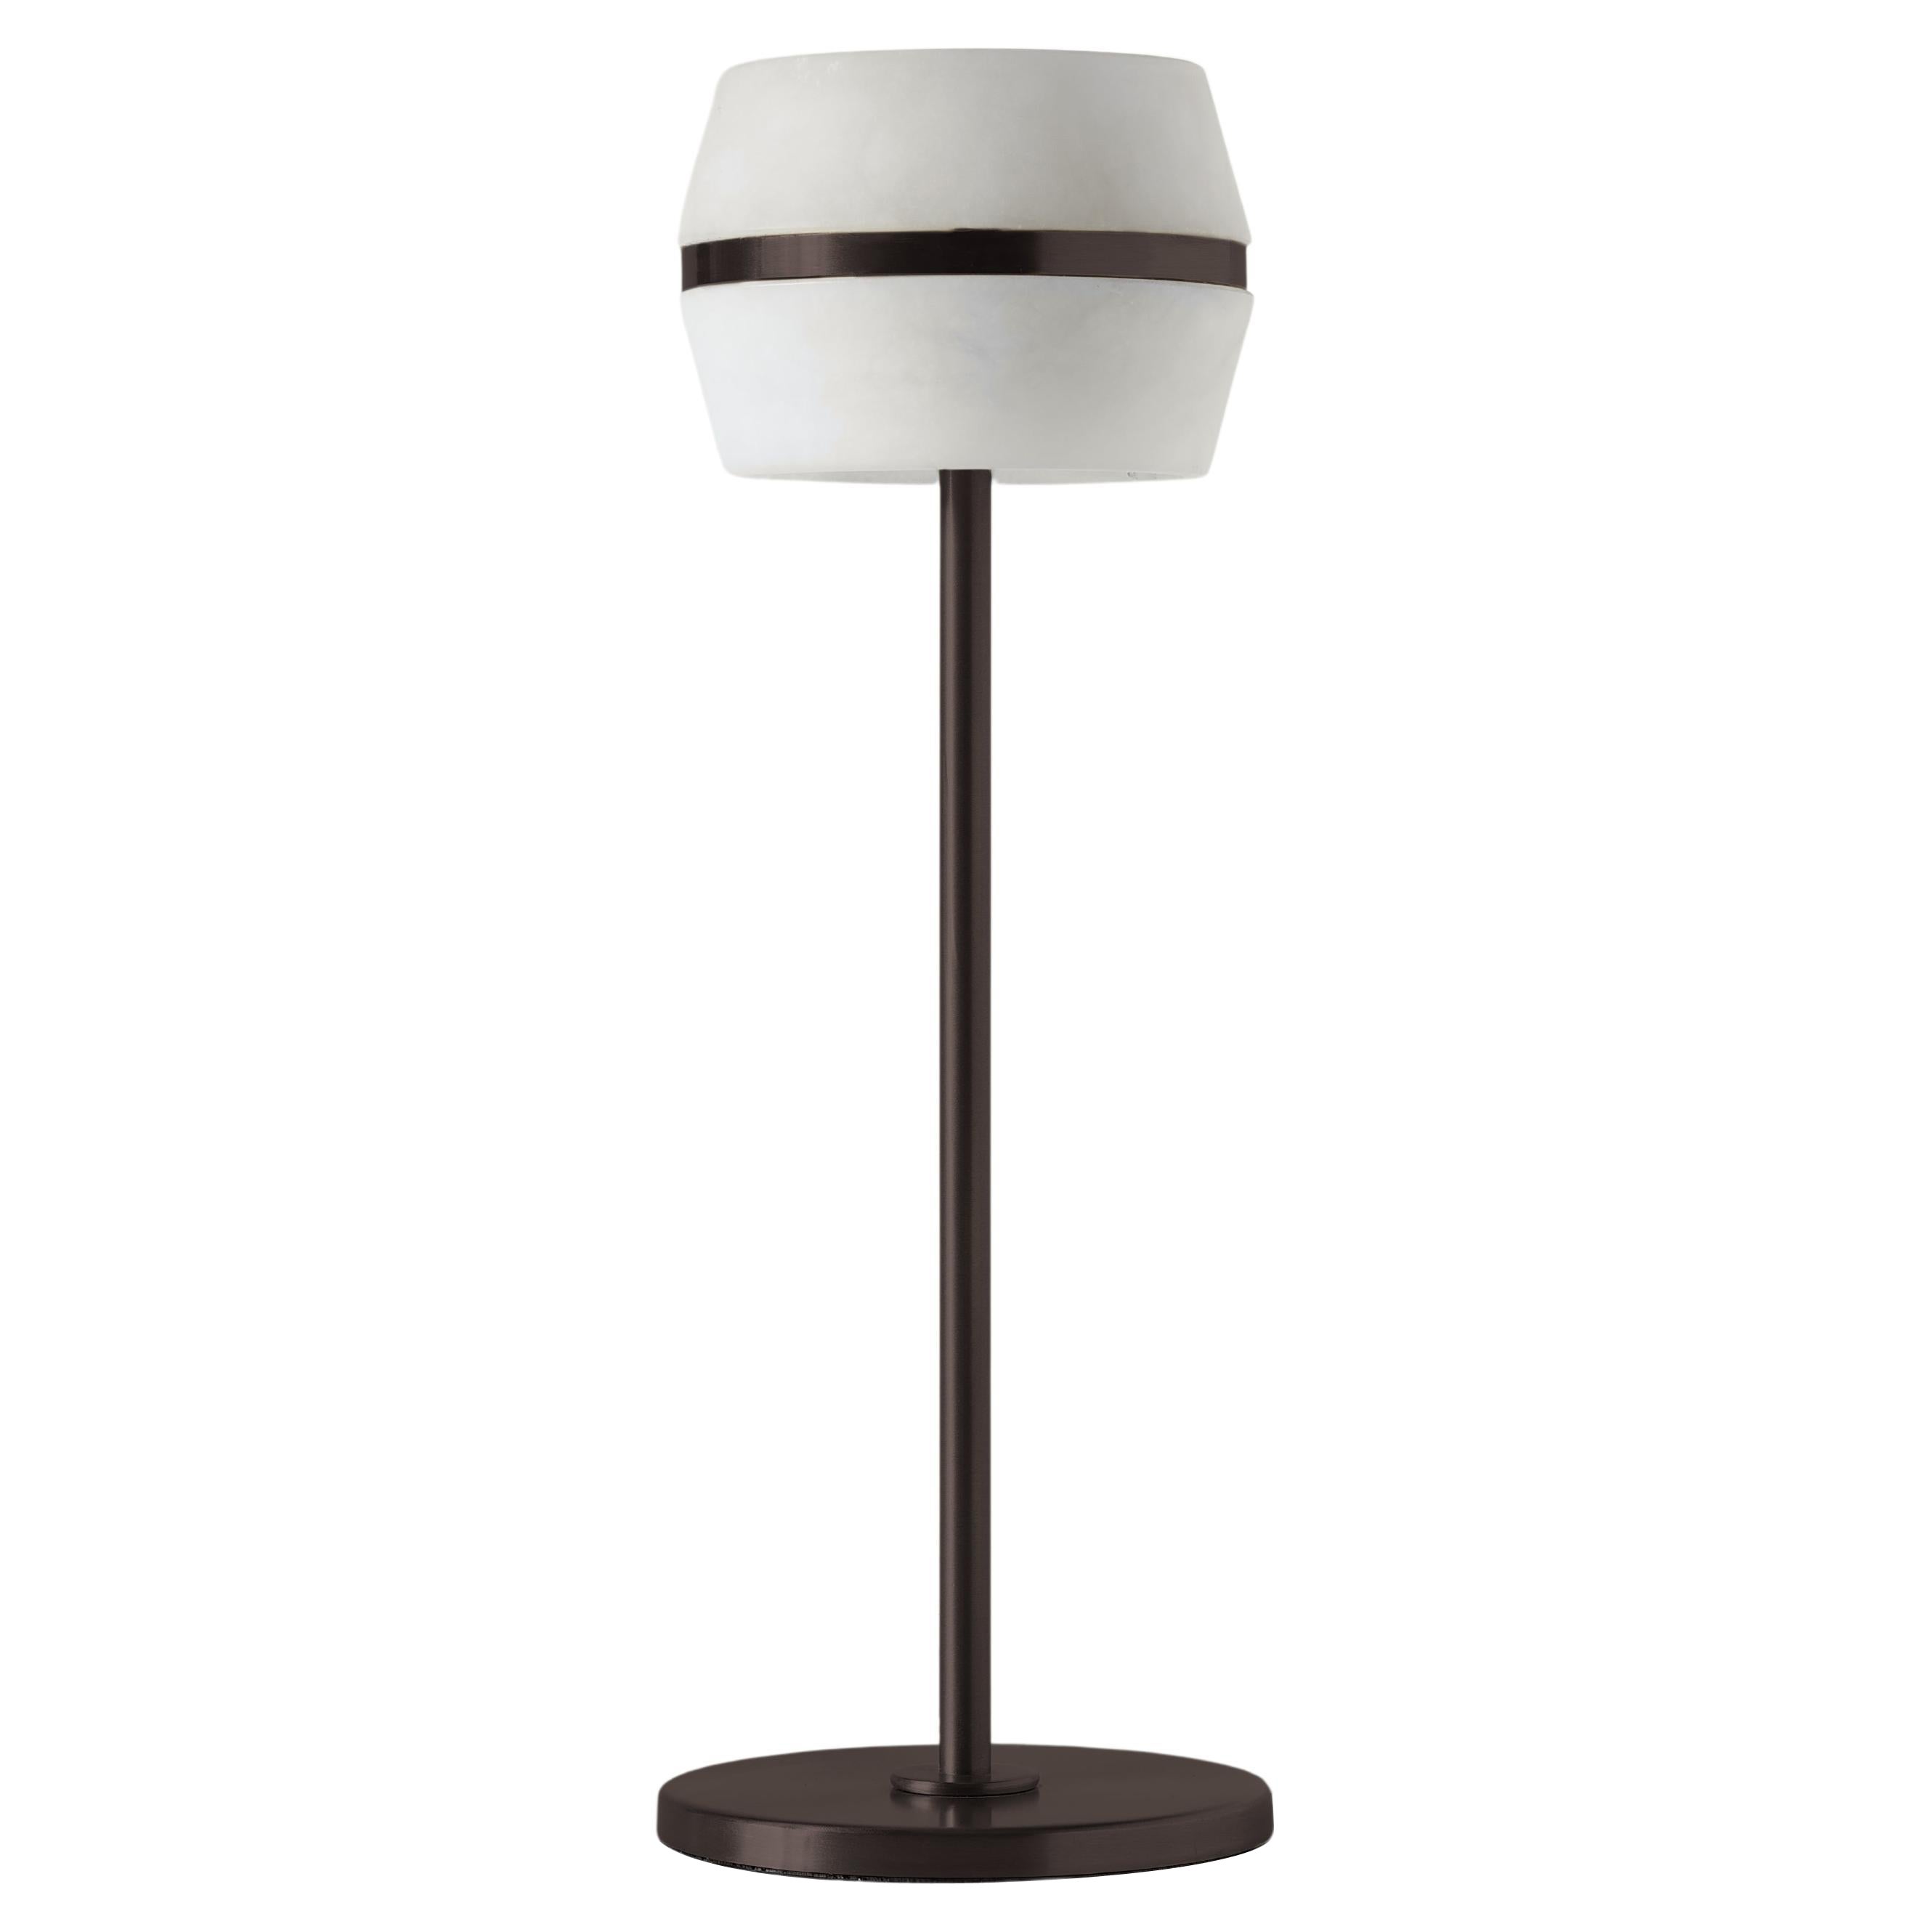 Modern Italian Table Lamp "Tommy Wireless" - Light Bronze